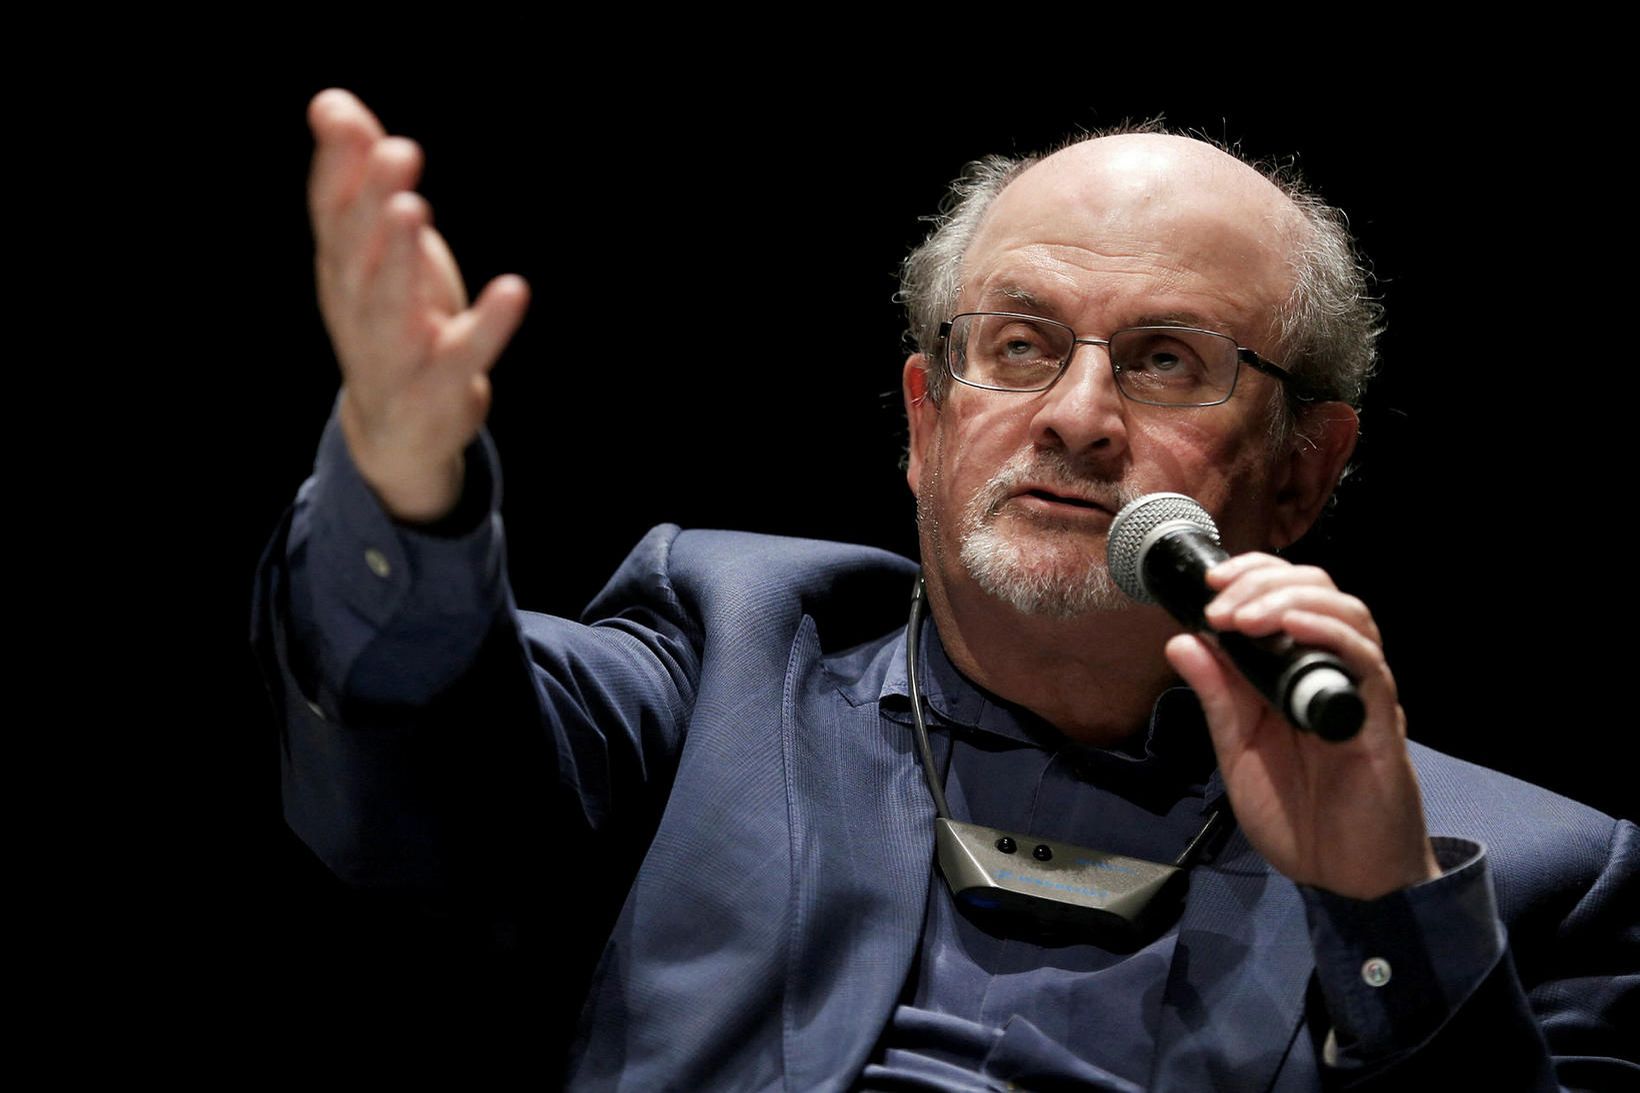 Bresk-ind­verski rit­höf­und­inn Salm­an Rus­hdie.